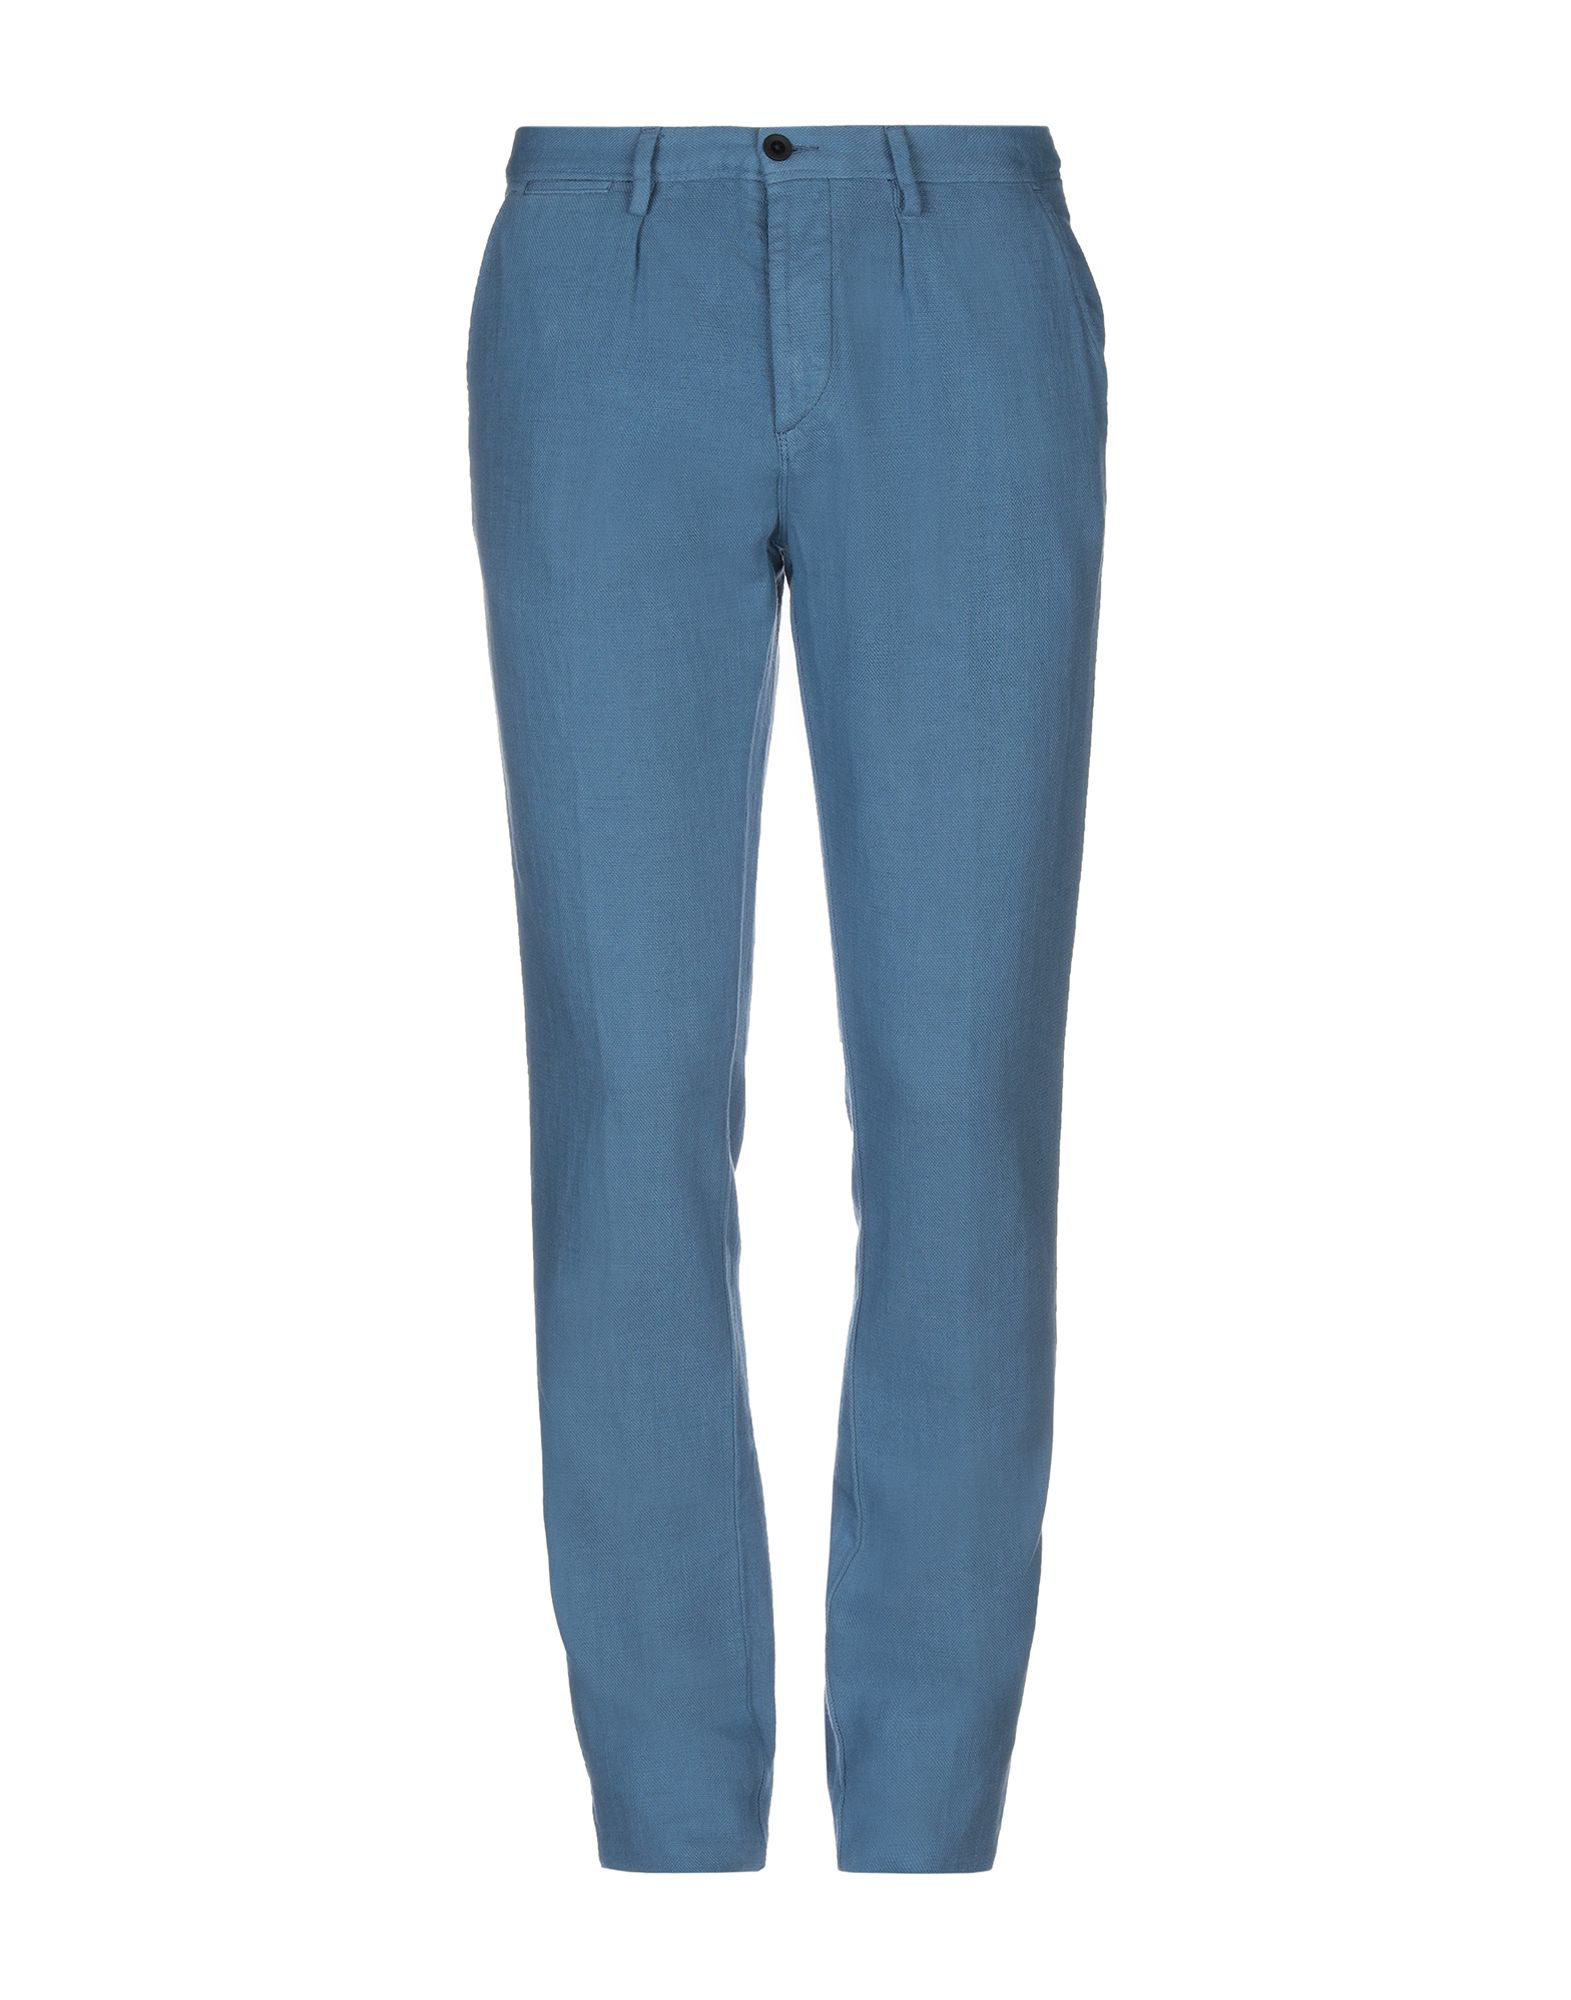 Henri Lloyd Casual Pants In Slate Blue | ModeSens